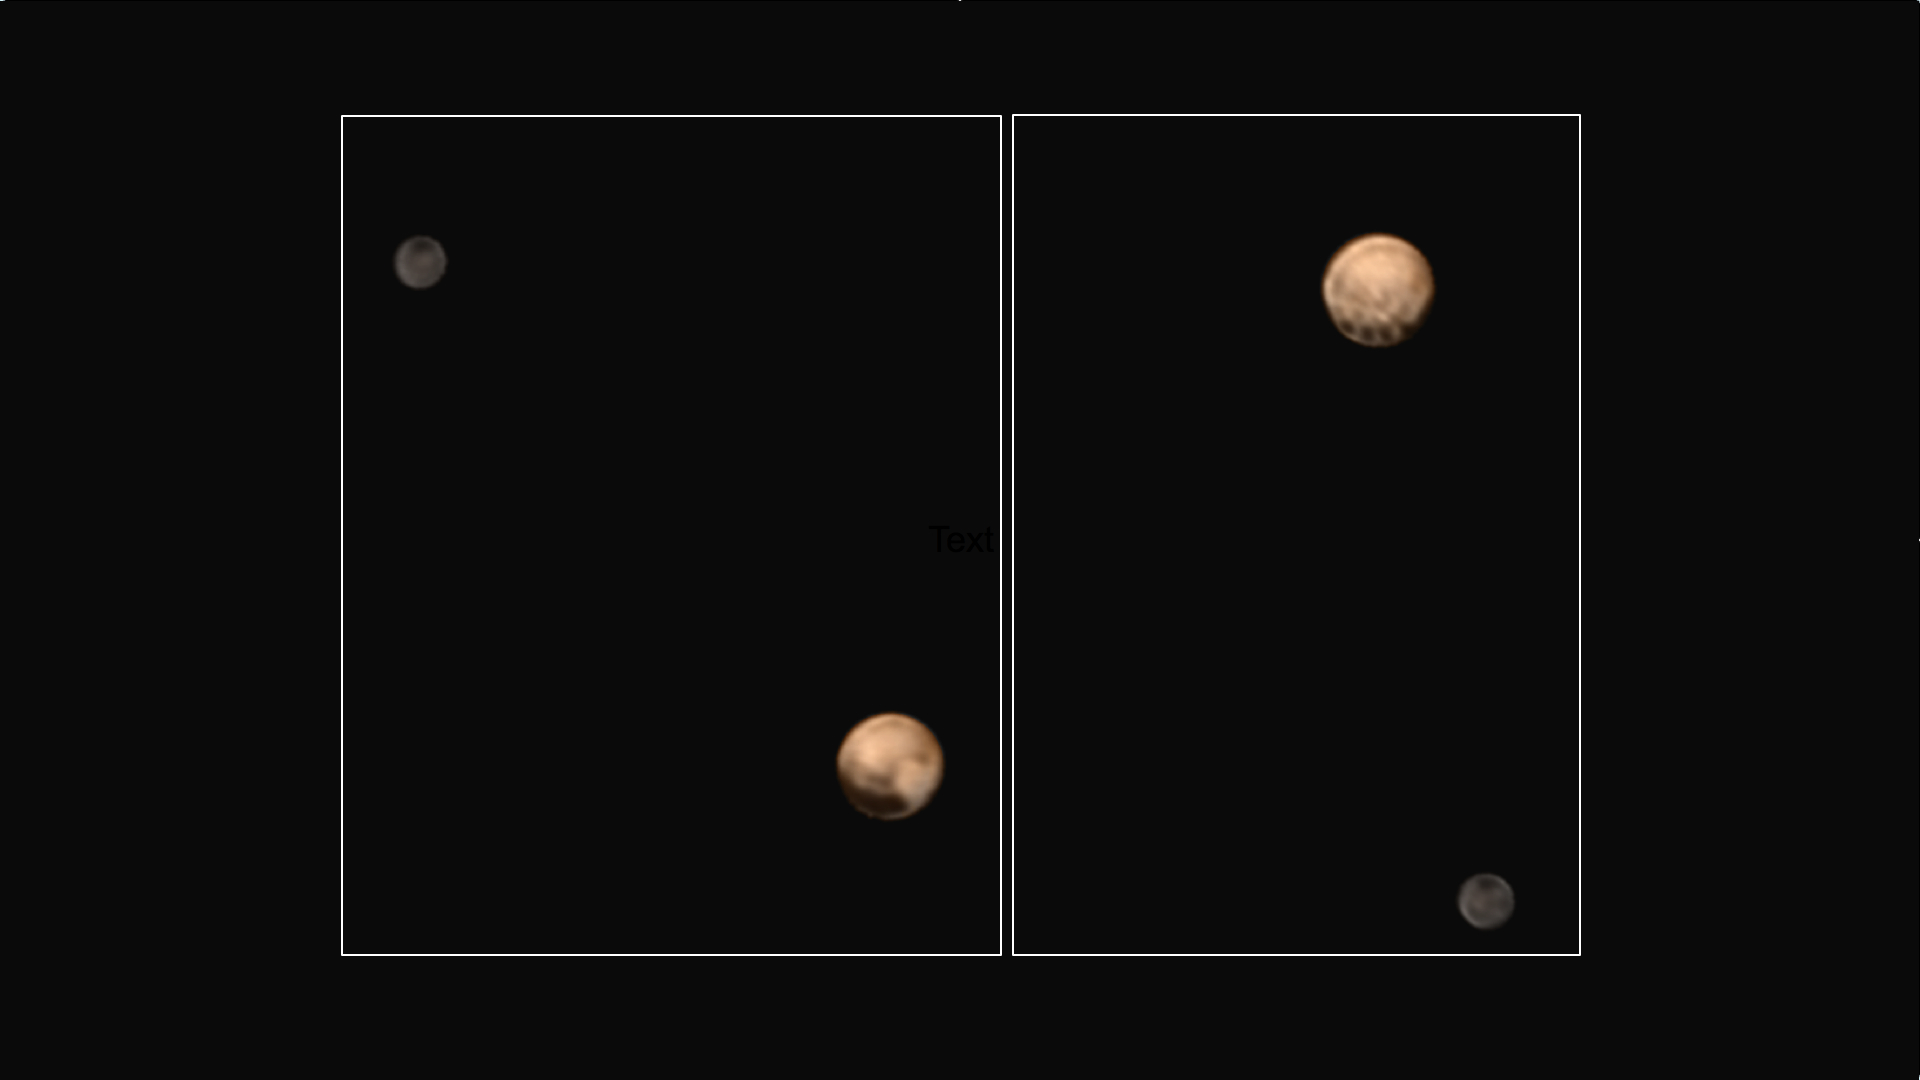 Neue Farbbilder von New Horizons zeigen zwei sehr unterschiedliche Gesichter des mysteriösen Zwergplaneten. Eine Reihe faszinierender gleichmäßig verteilter Flecken entlang des Äquators zieren die eine Seite des Zwergplaneten. Die Aufnahmen sind eine Kombination der Instrumente LORRI und RALPH.